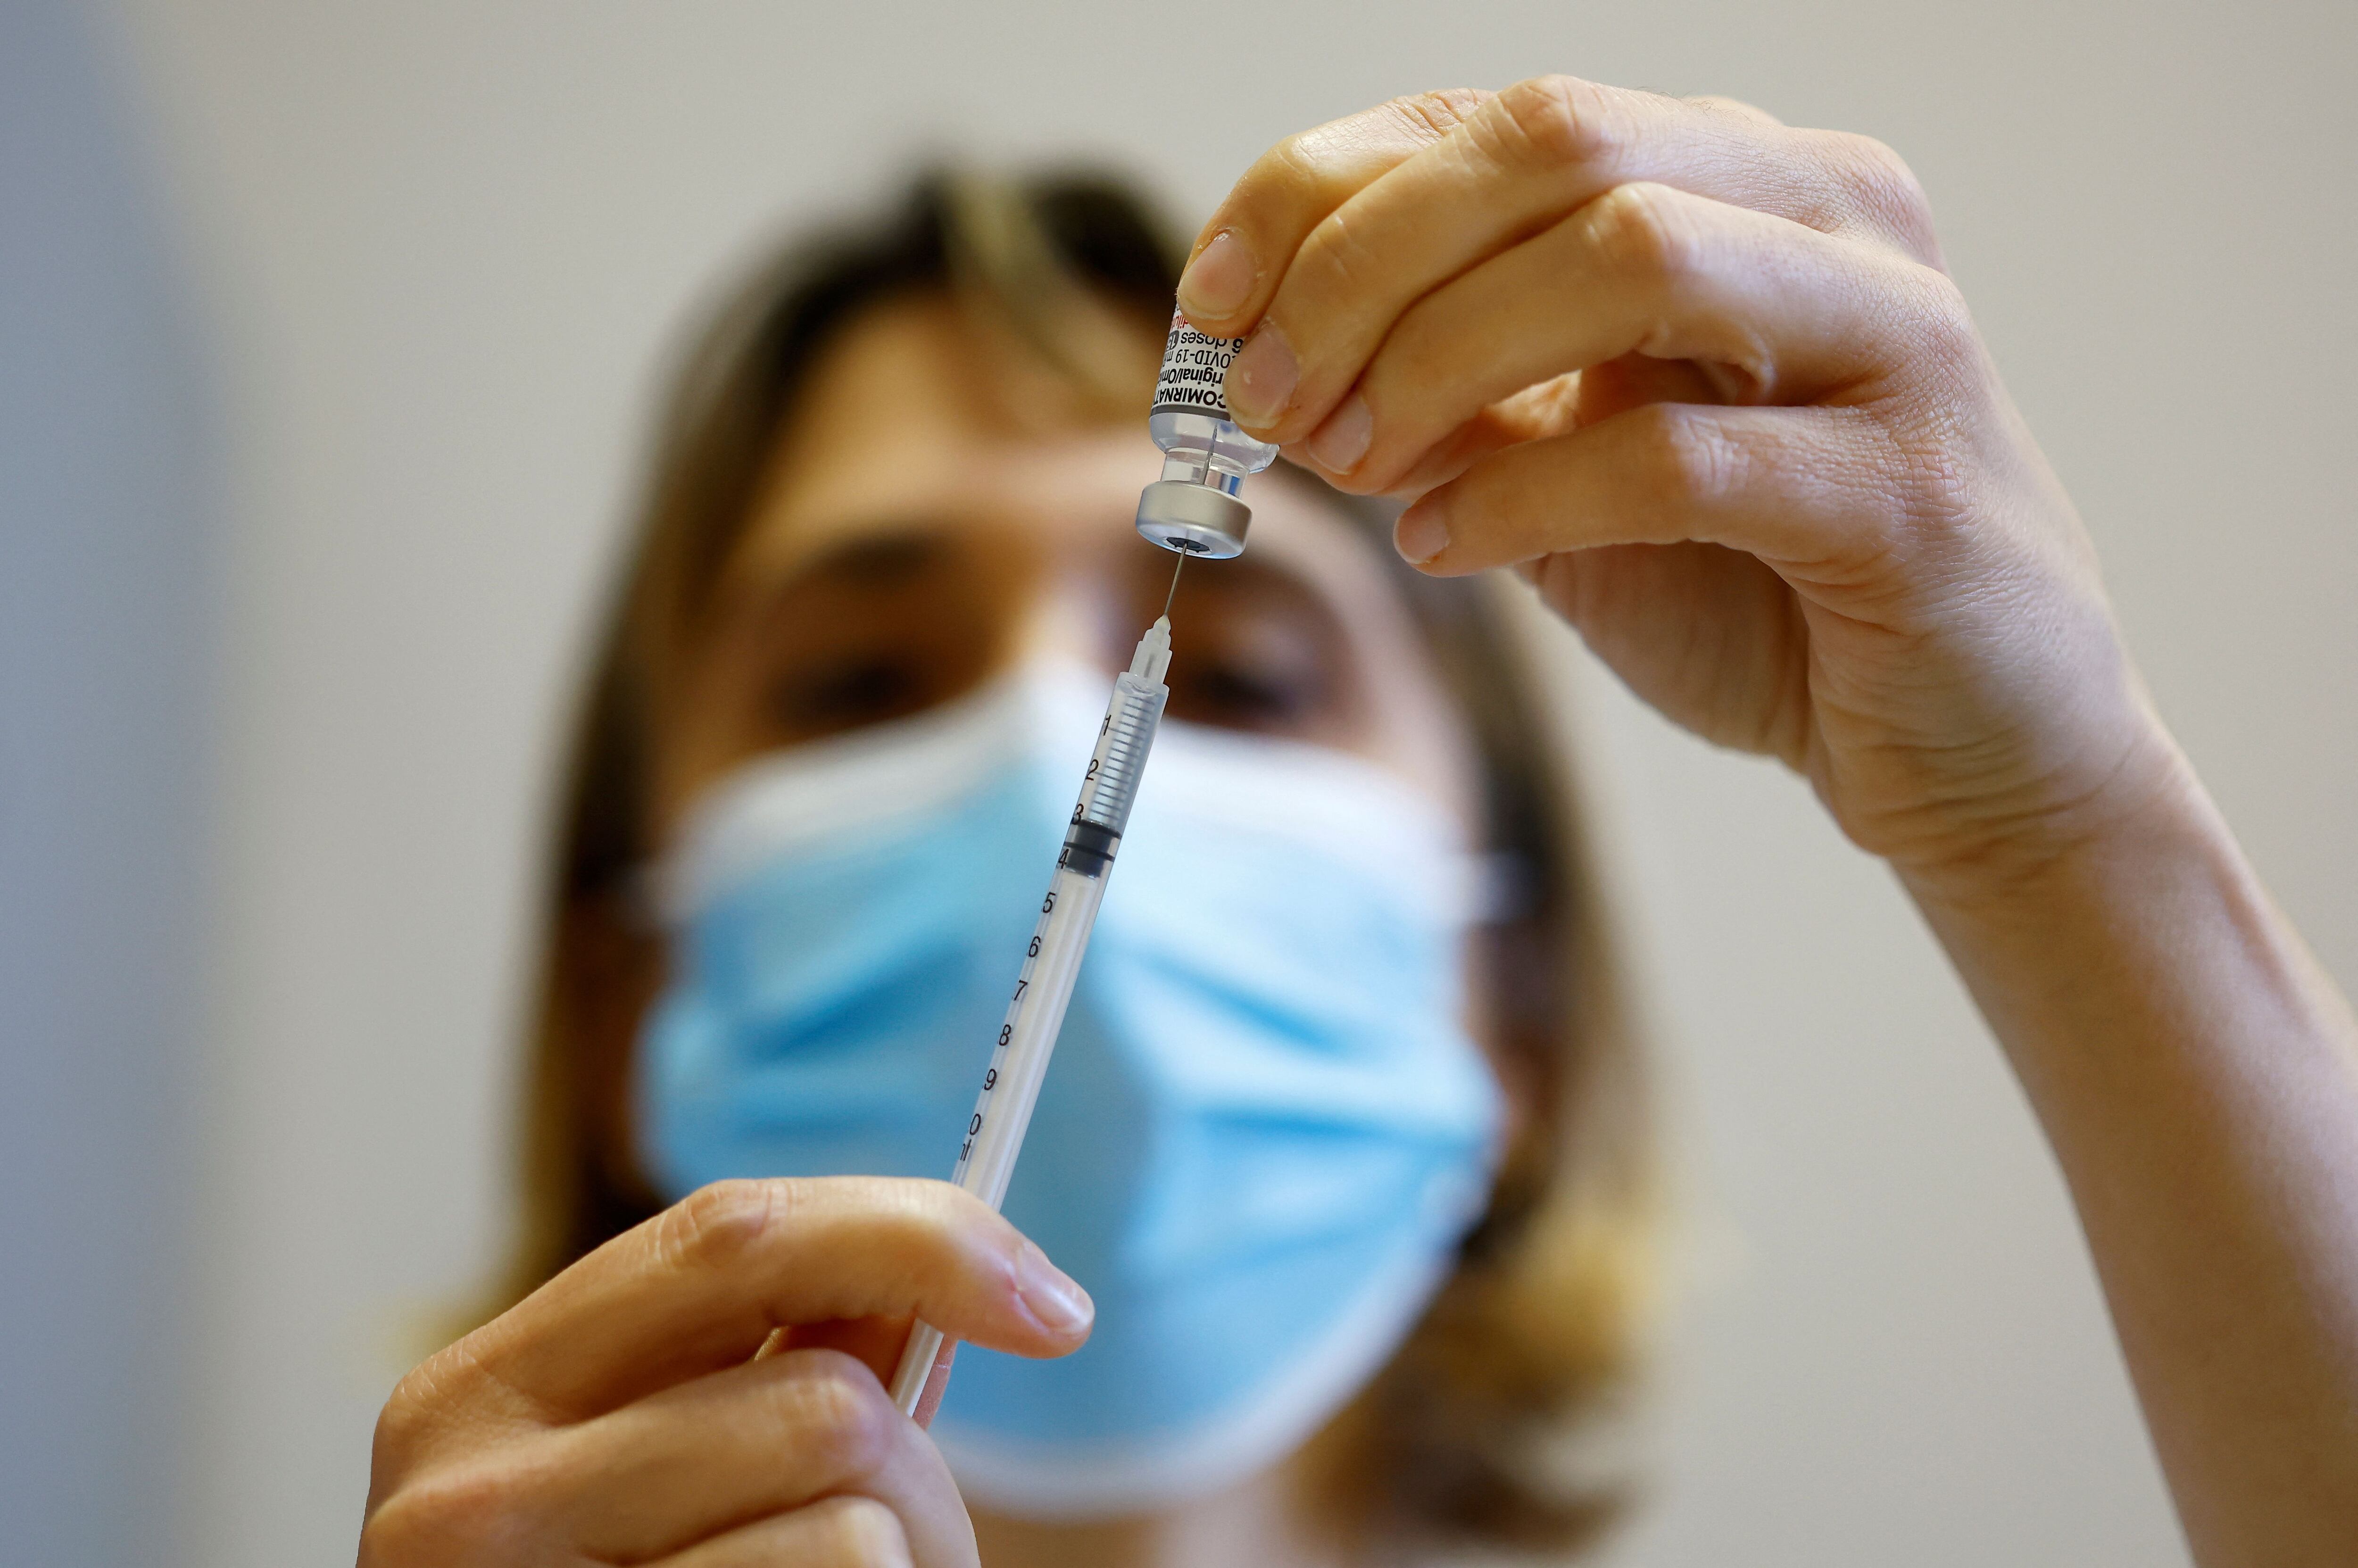 Al abanico de vacunas contra el COVID que han formado parte del plan estratégico de vacunación en Argentina, se le suman las dosis de vacunas bivalentes o bivariantes (REUTERS/Eric Gaillard)